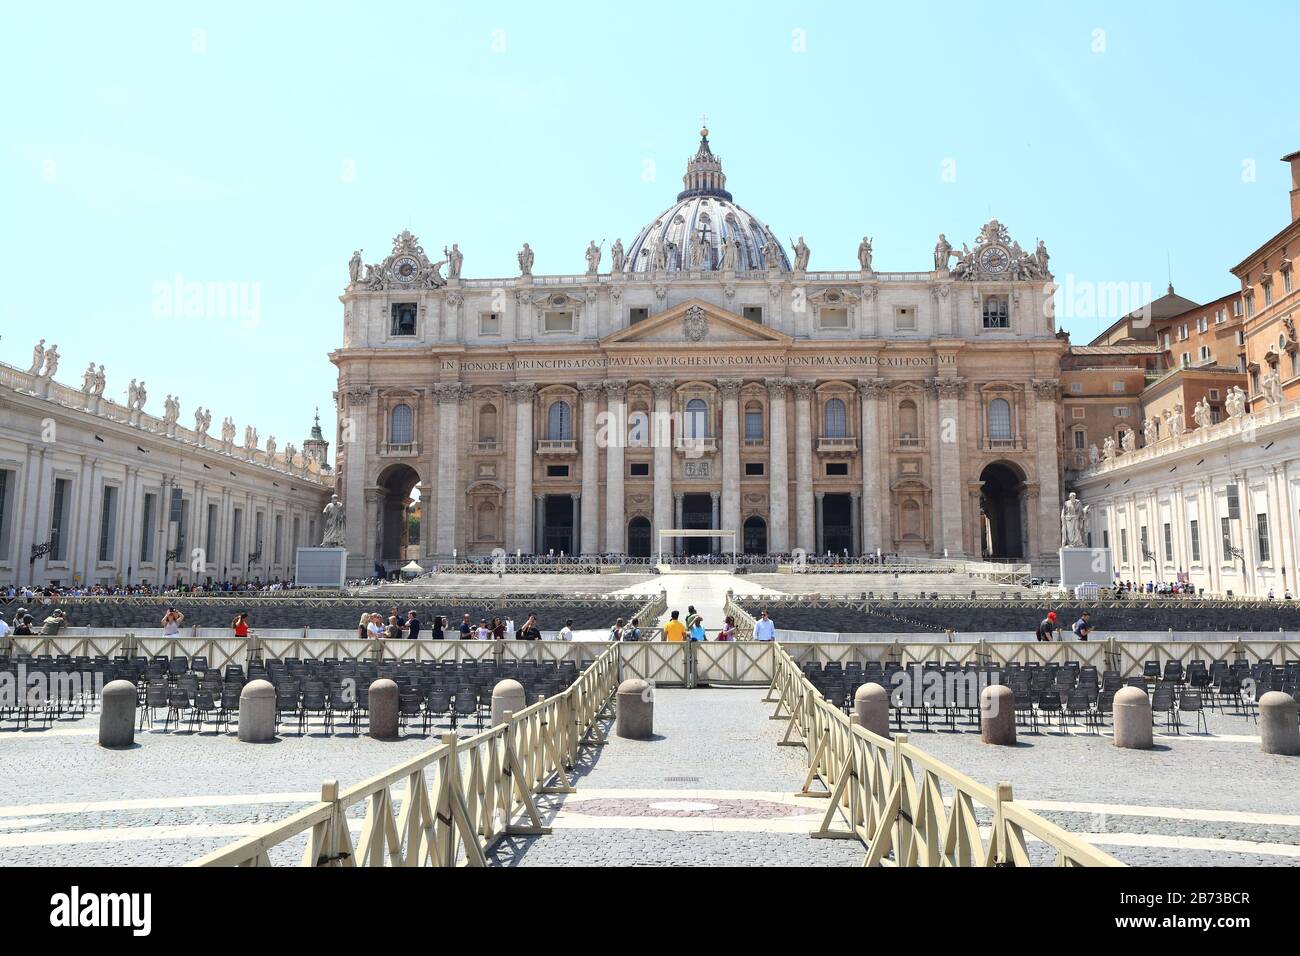 Editorial Plaza de San Pedro, Ciudad del Vaticano-17.06.2019: Los turistas visitan el famoso monumento en el verano. Foto de stock